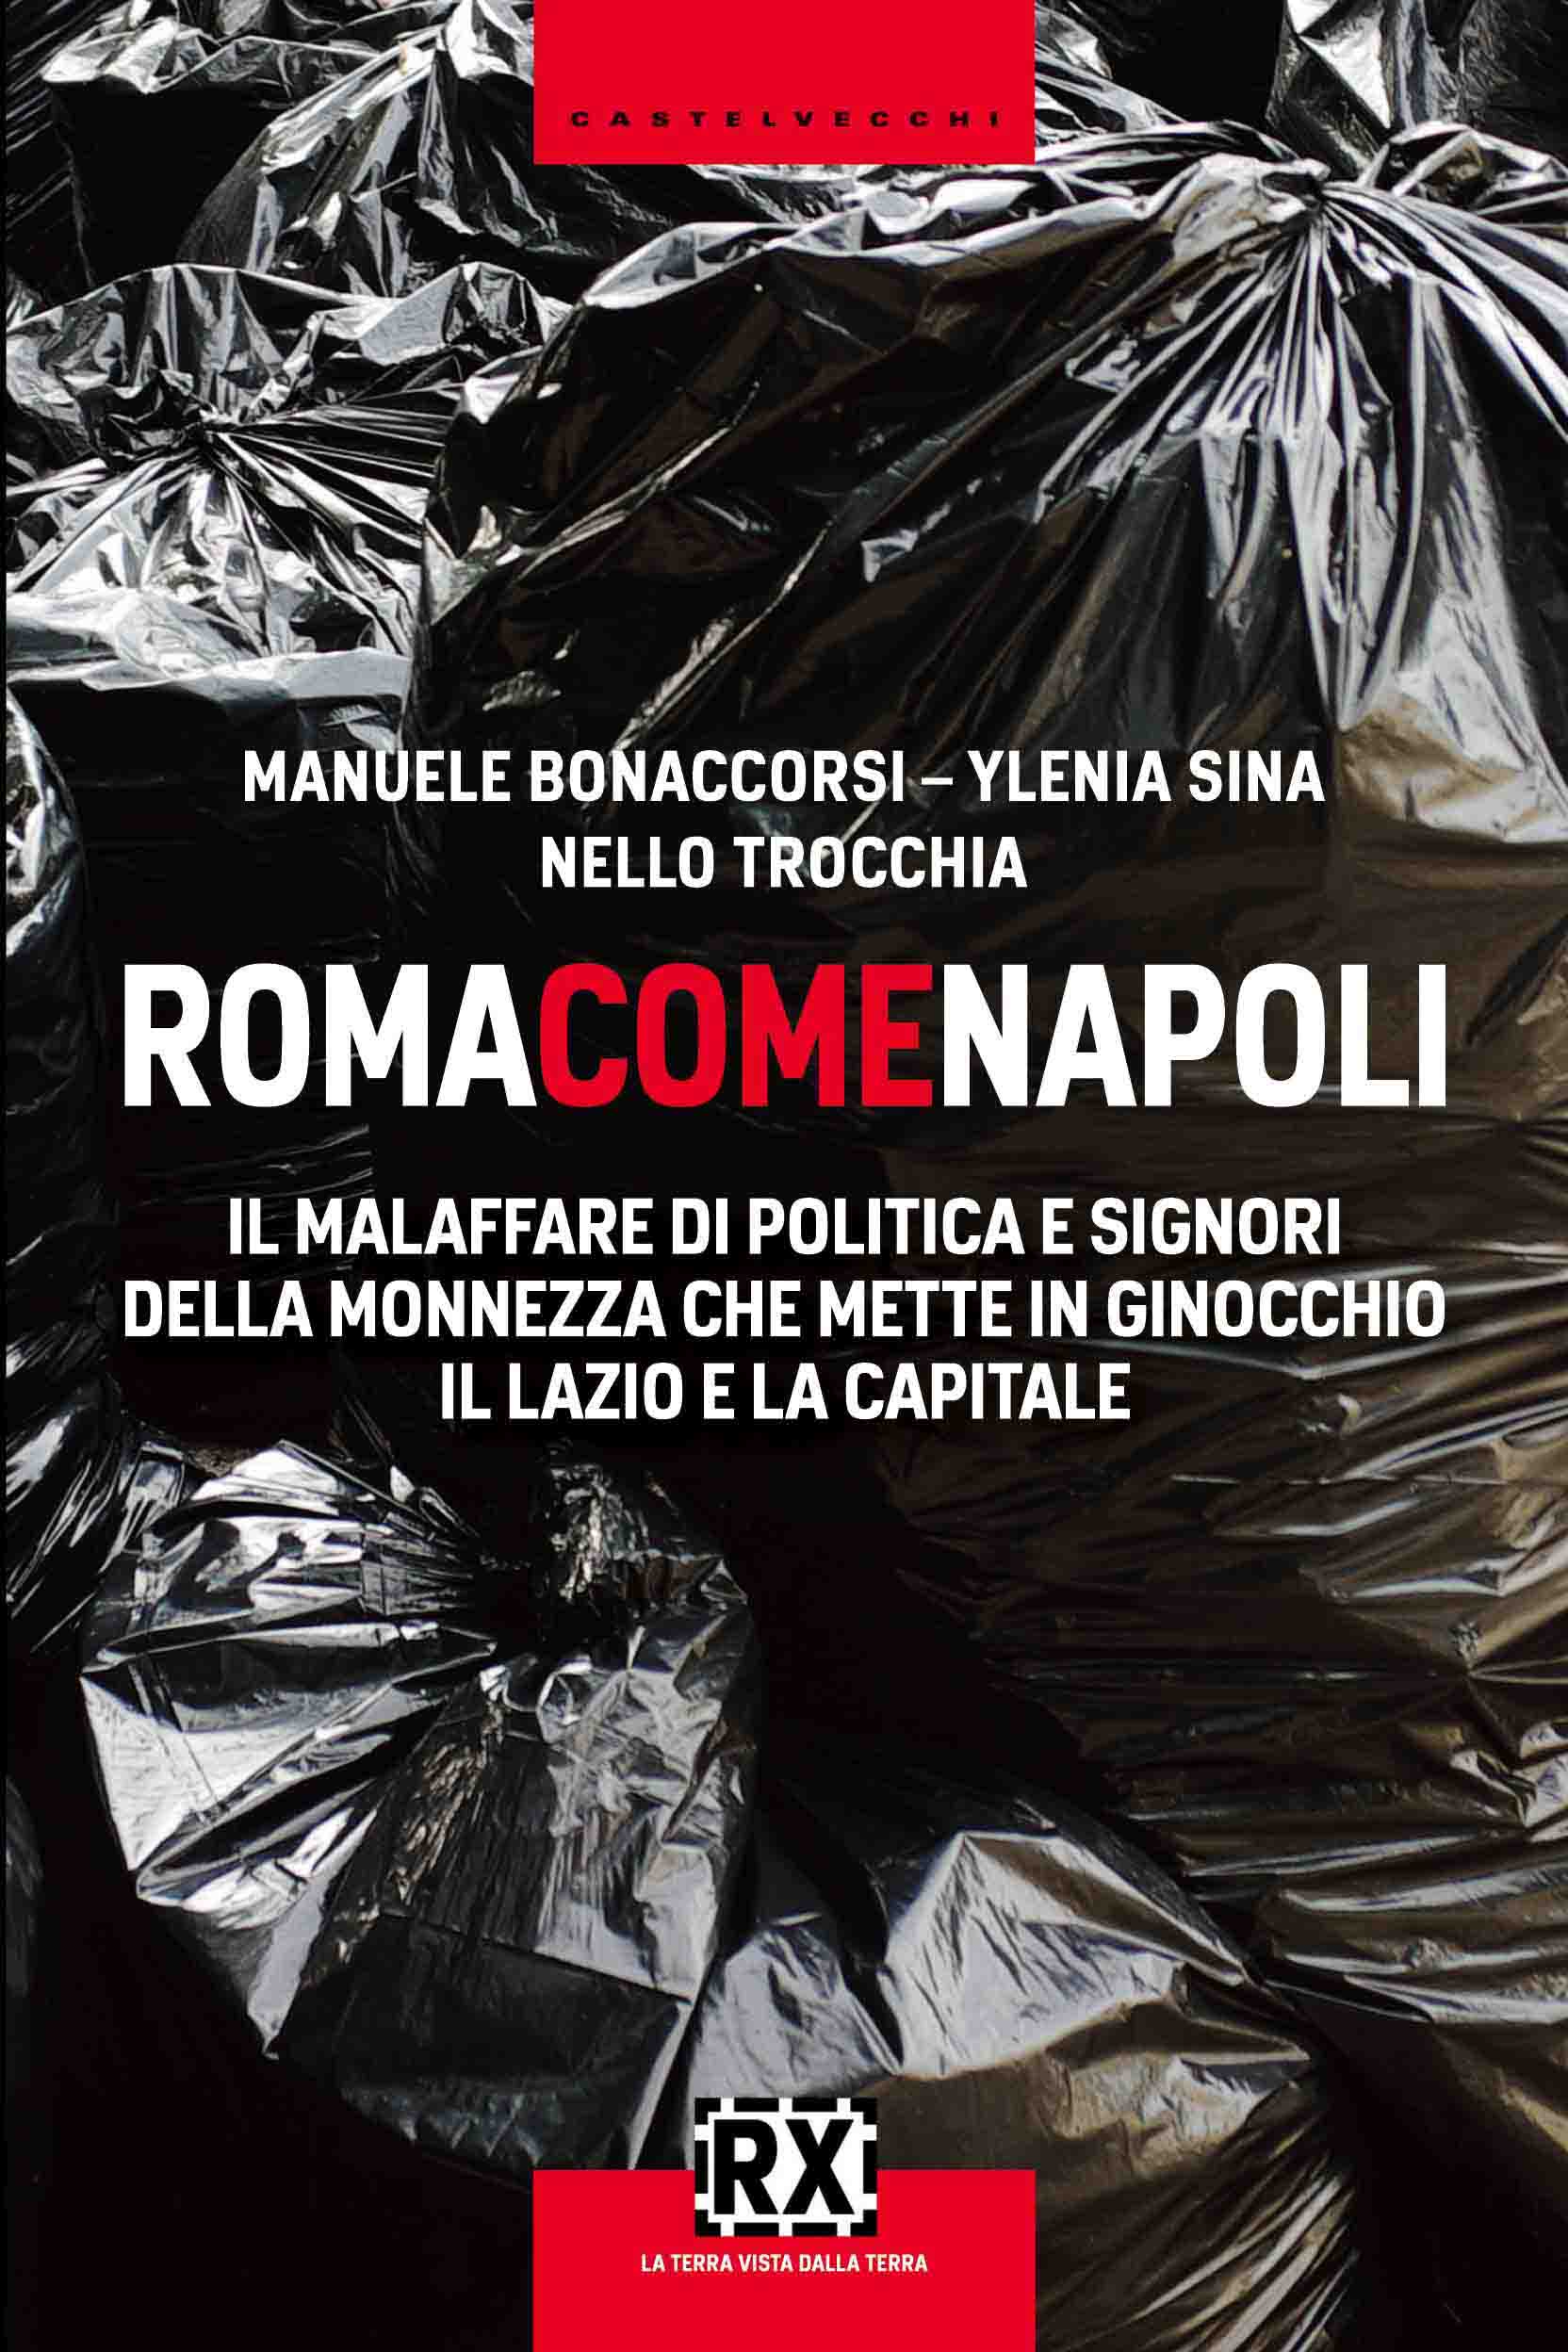 Presentazione del libro “Roma come Napoli”